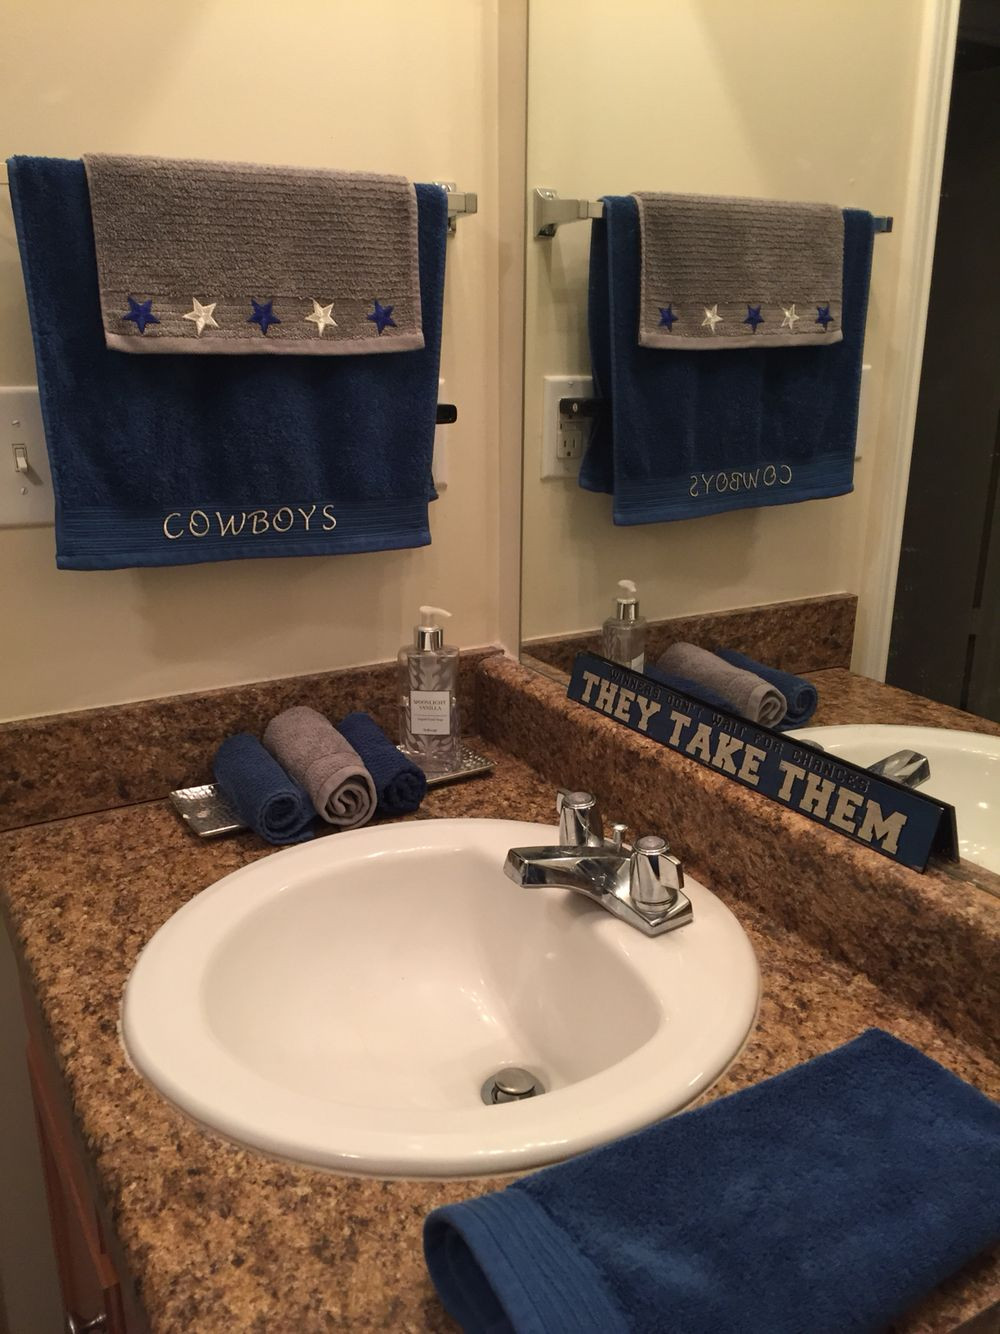 Dallas Cowboys Bathroom Decor
 Dallas cowboy bathroom re design Dallas Cowboys